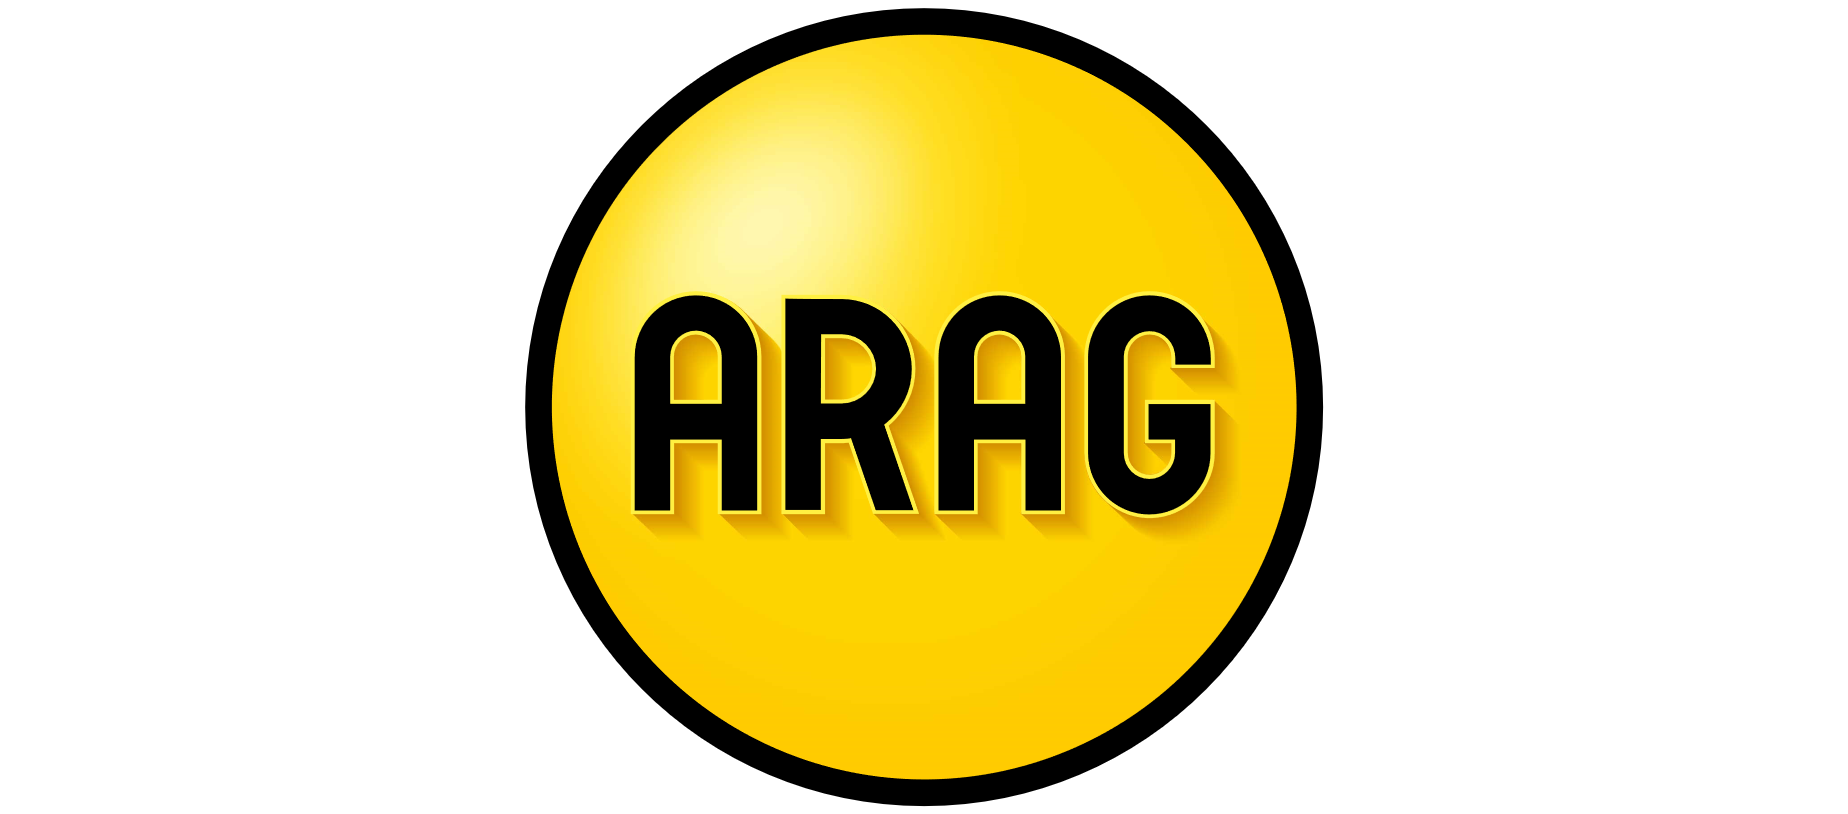 ARAG Krankenversicherung